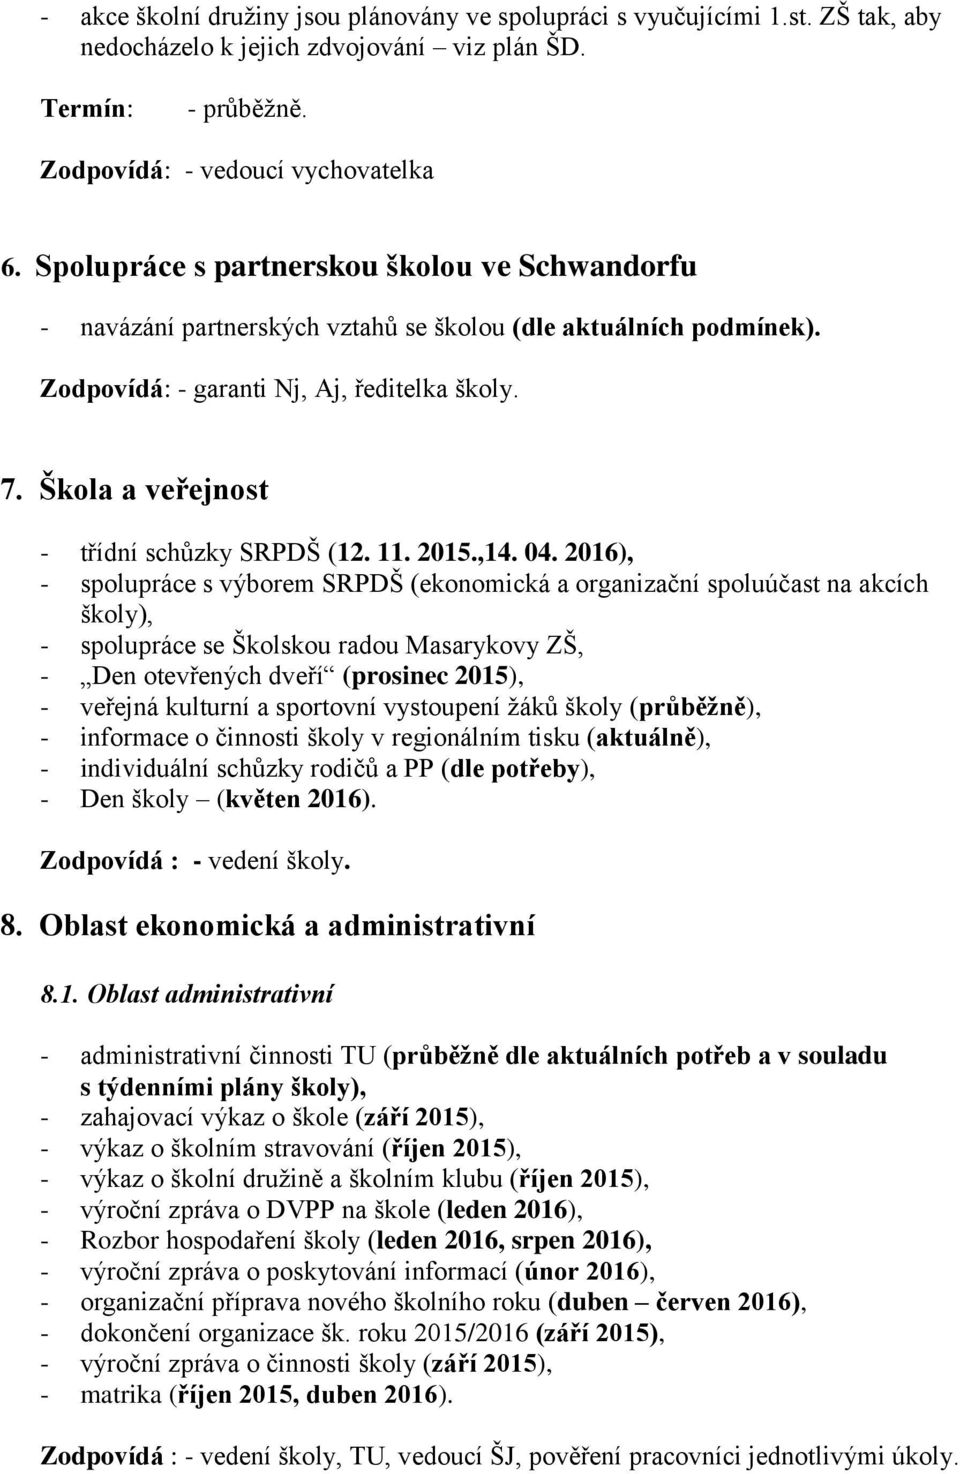 Škola a veřejnost - třídní schůzky SRPDŠ (12. 11. 2015.,14. 04.